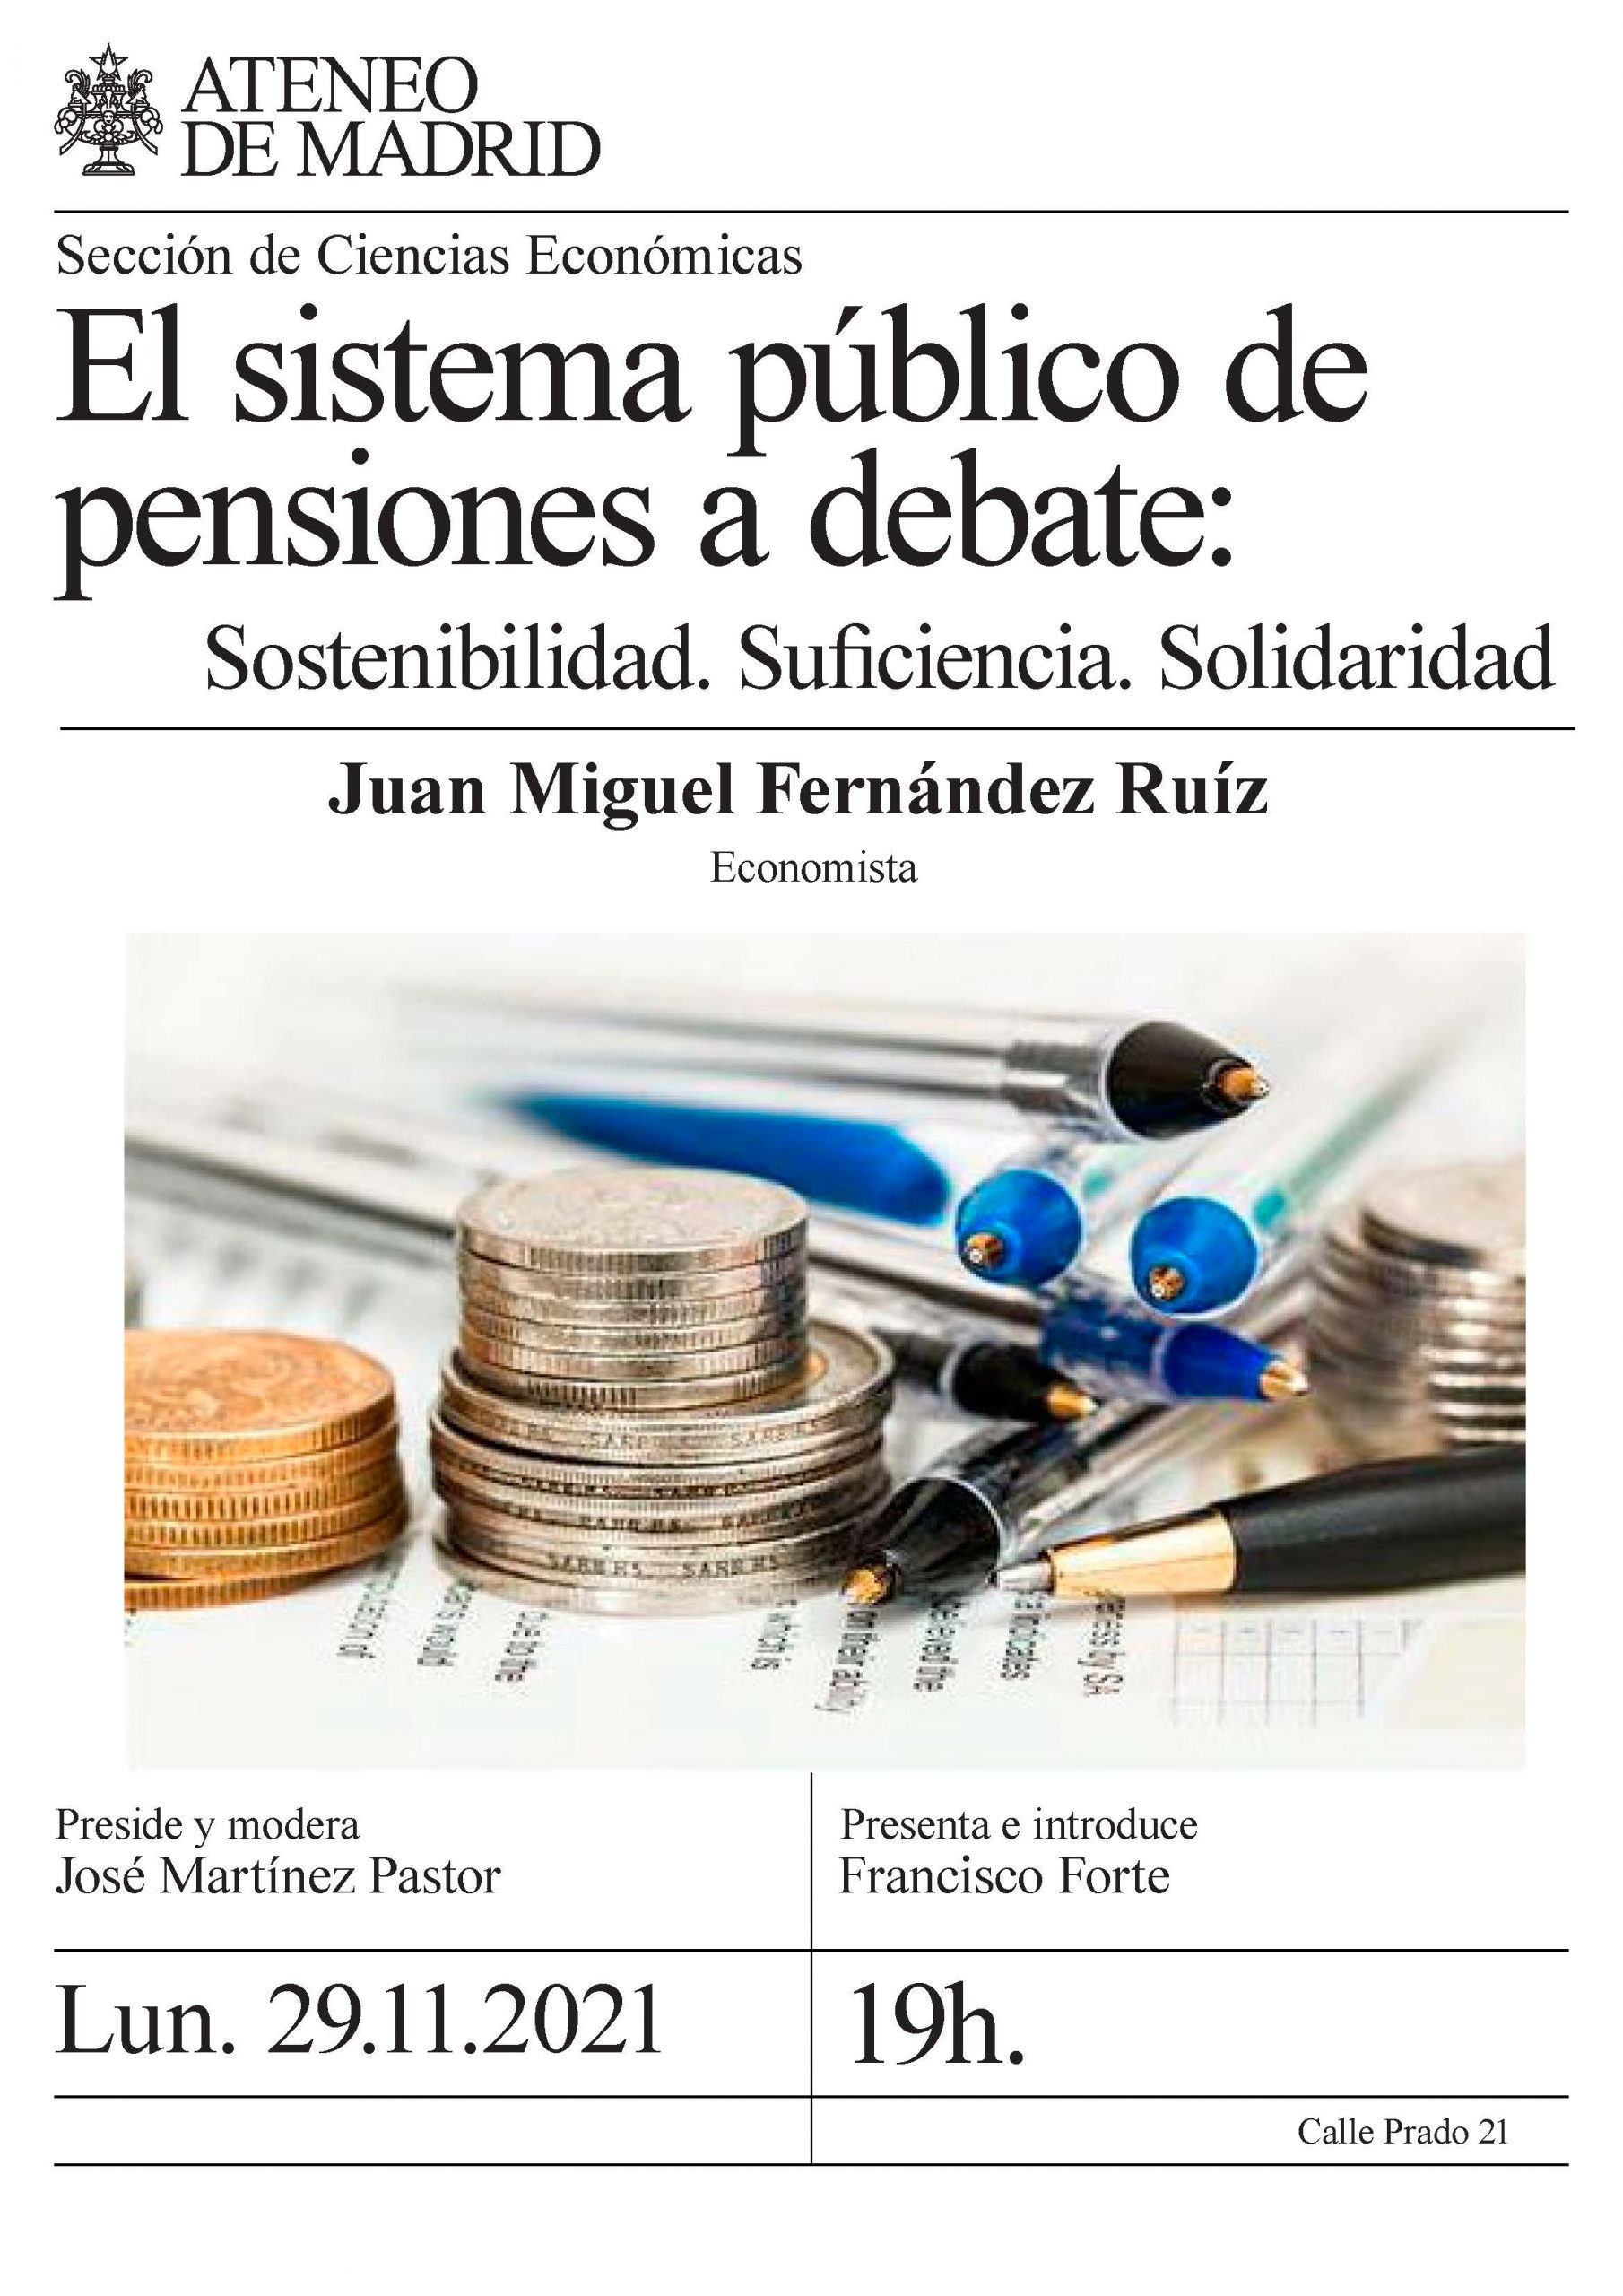 El sistema público de pensiones a debate: Sostenibilidad. Suficiencia. Solidaridad